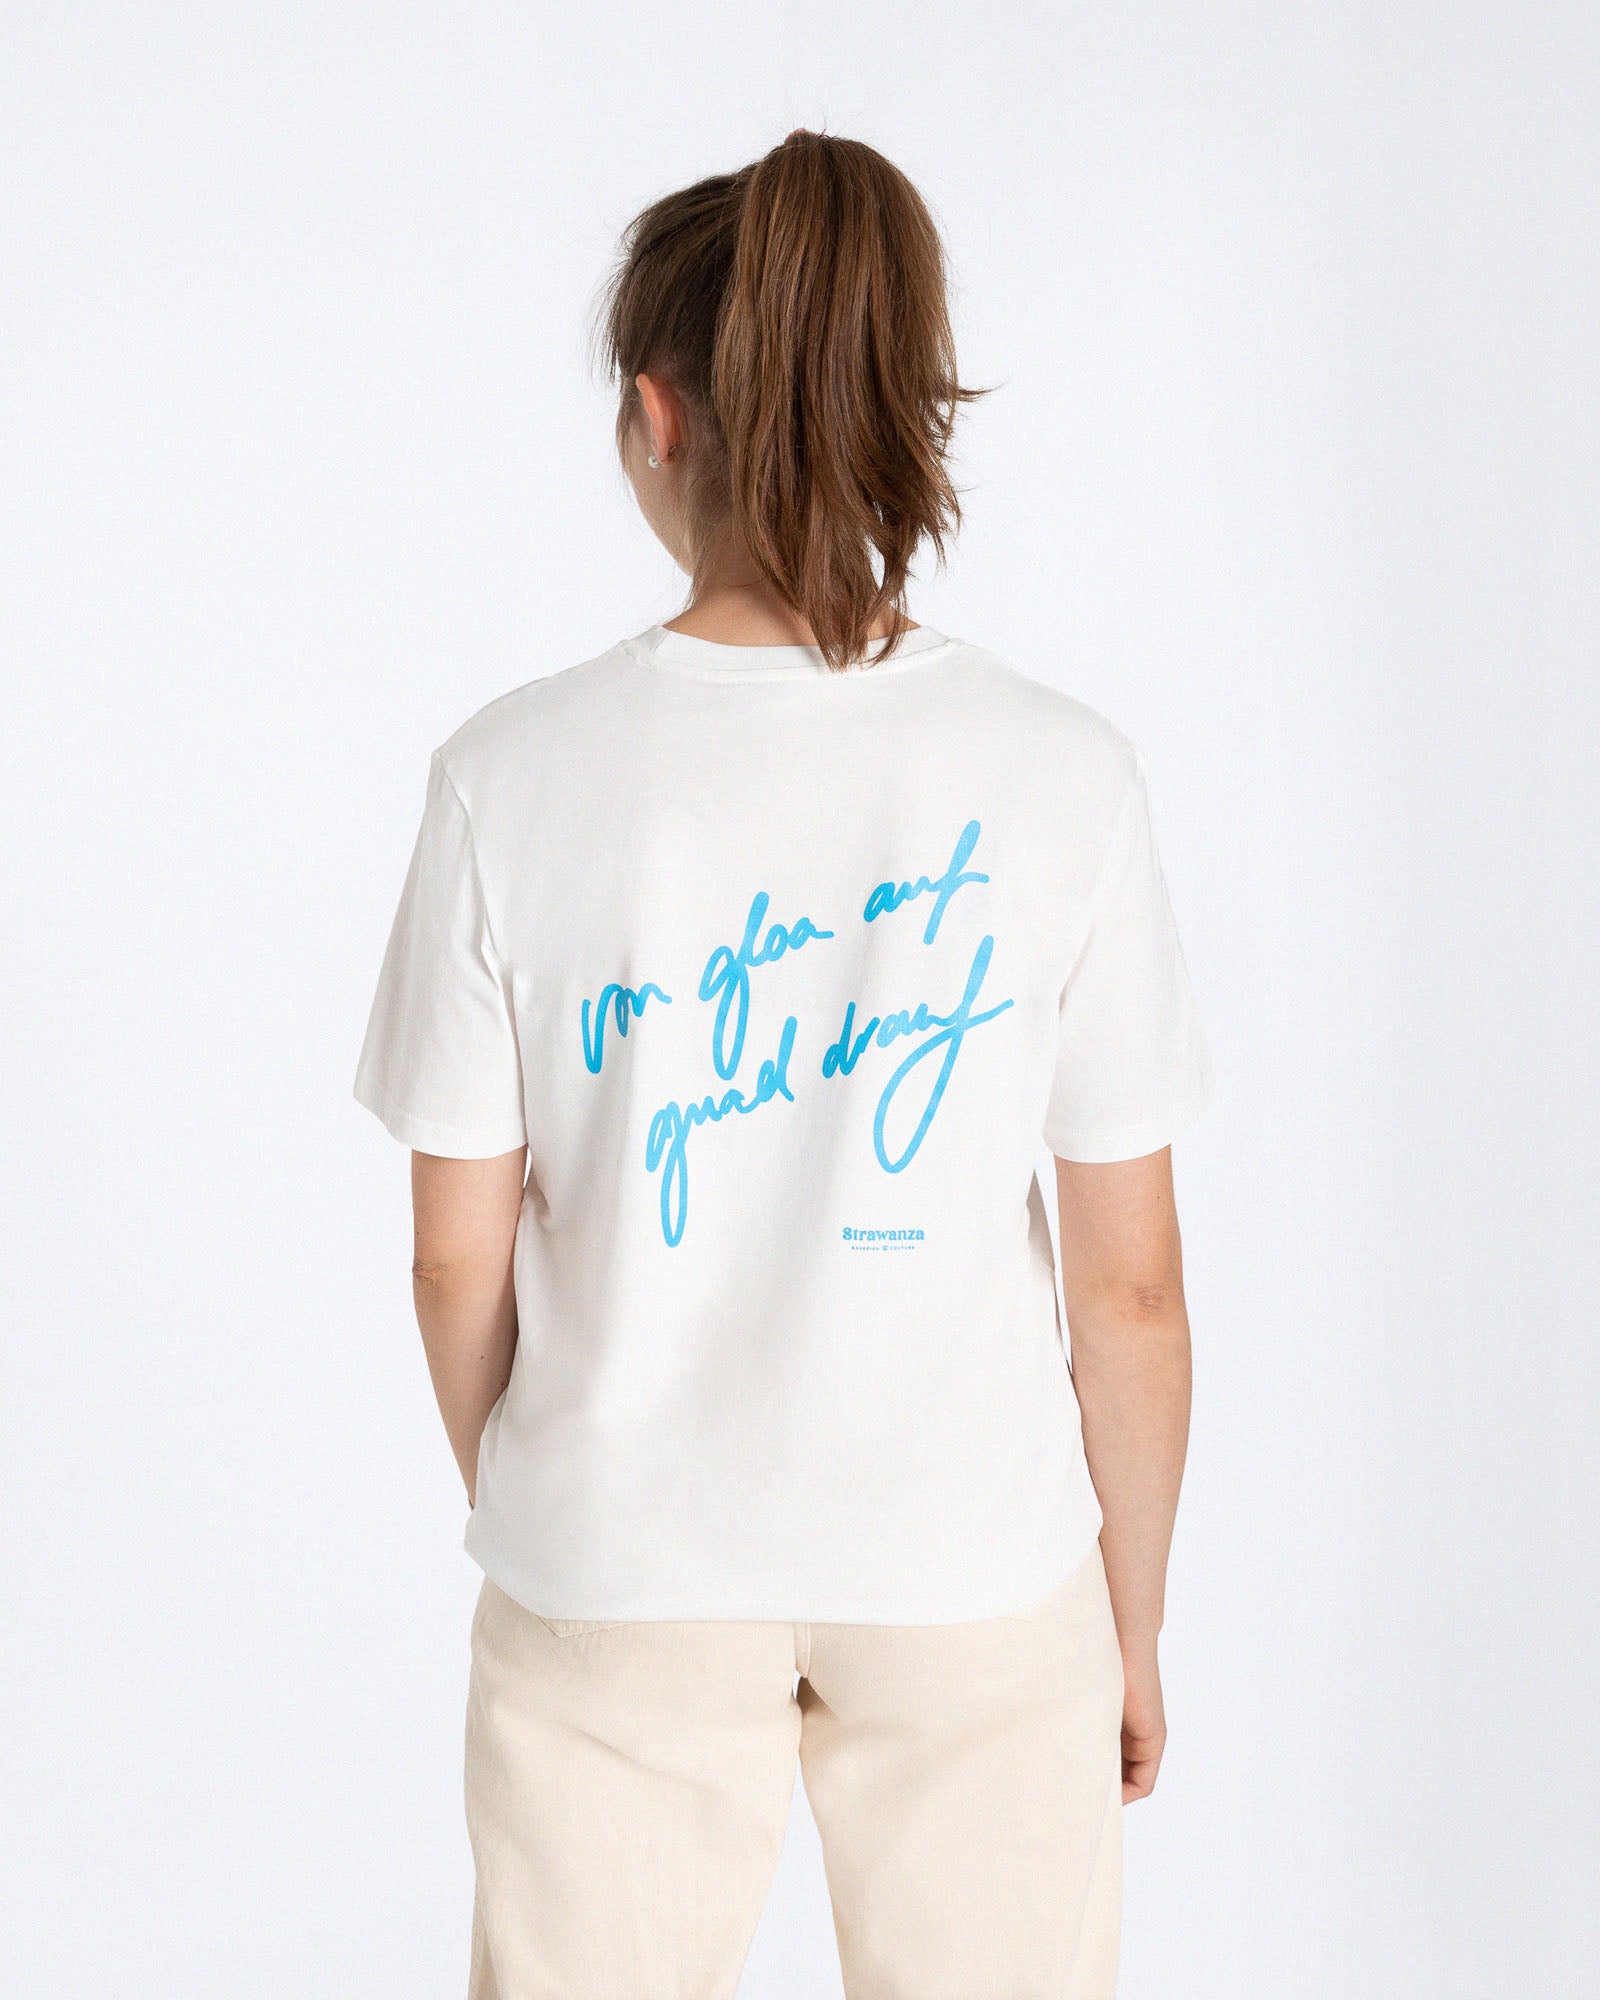 Ein weibliches Model trägt ein weißes T-Shirt mit einem blauen 